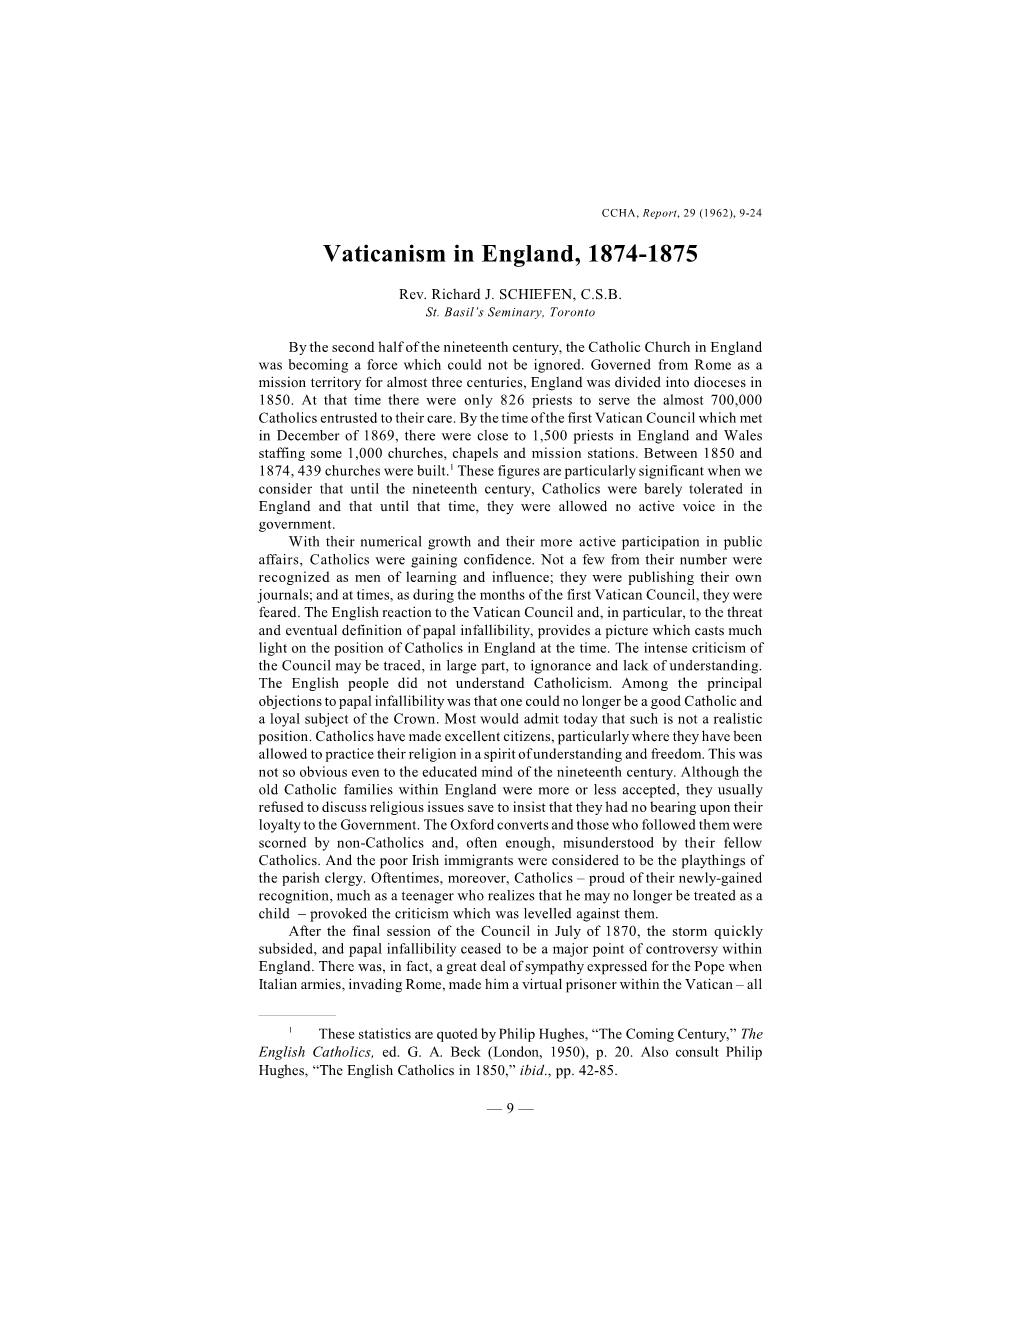 Vaticanism in England, 1874-1875